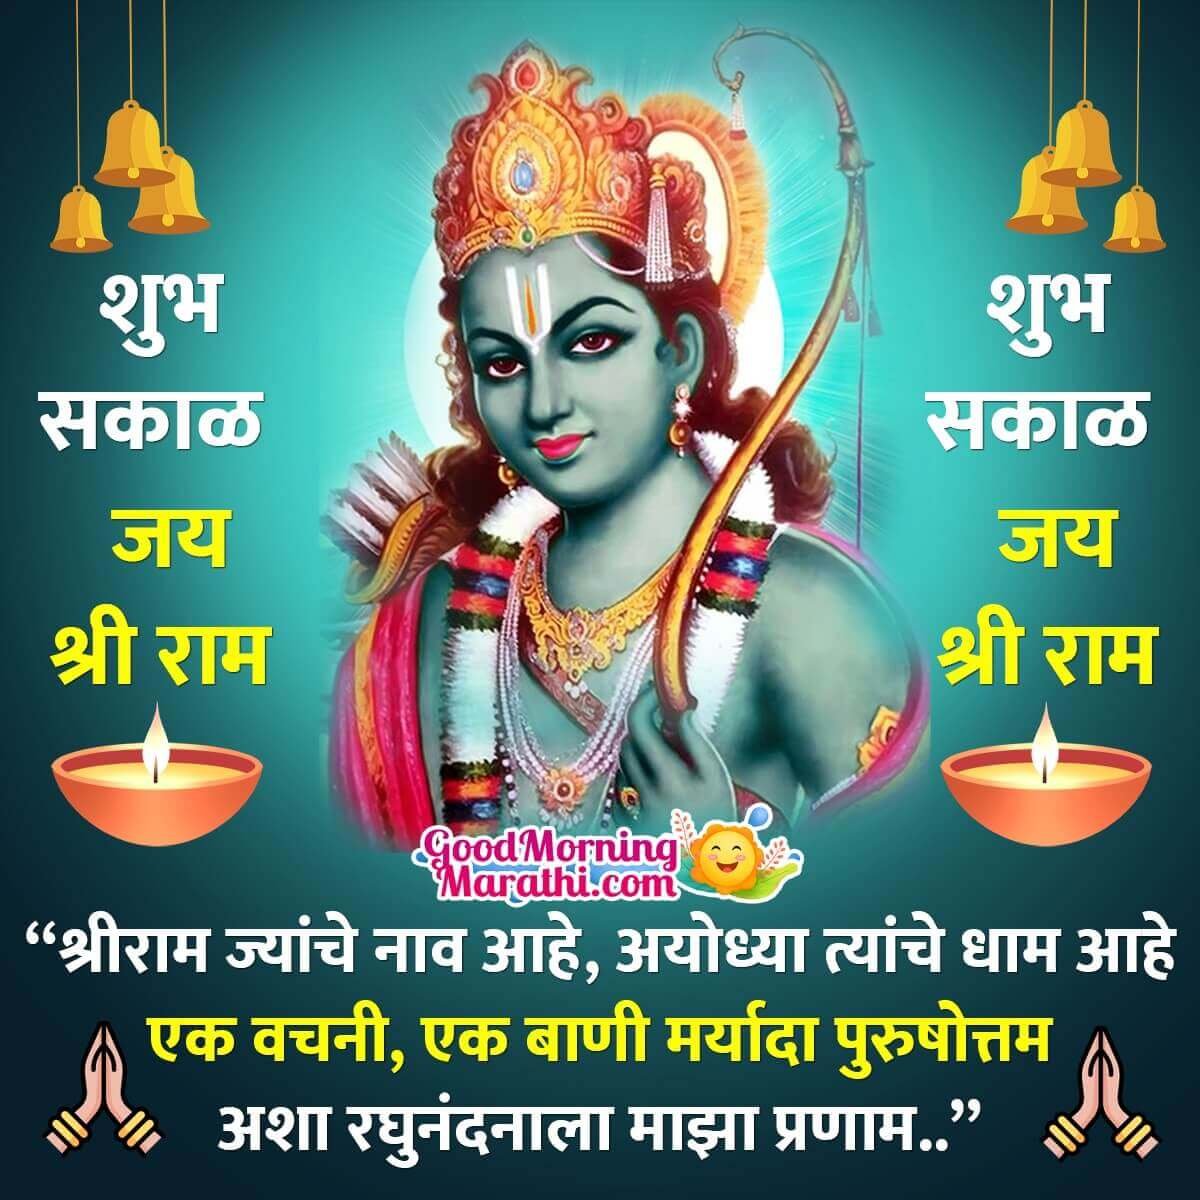 Good Morning Shri Ram Greeting Image